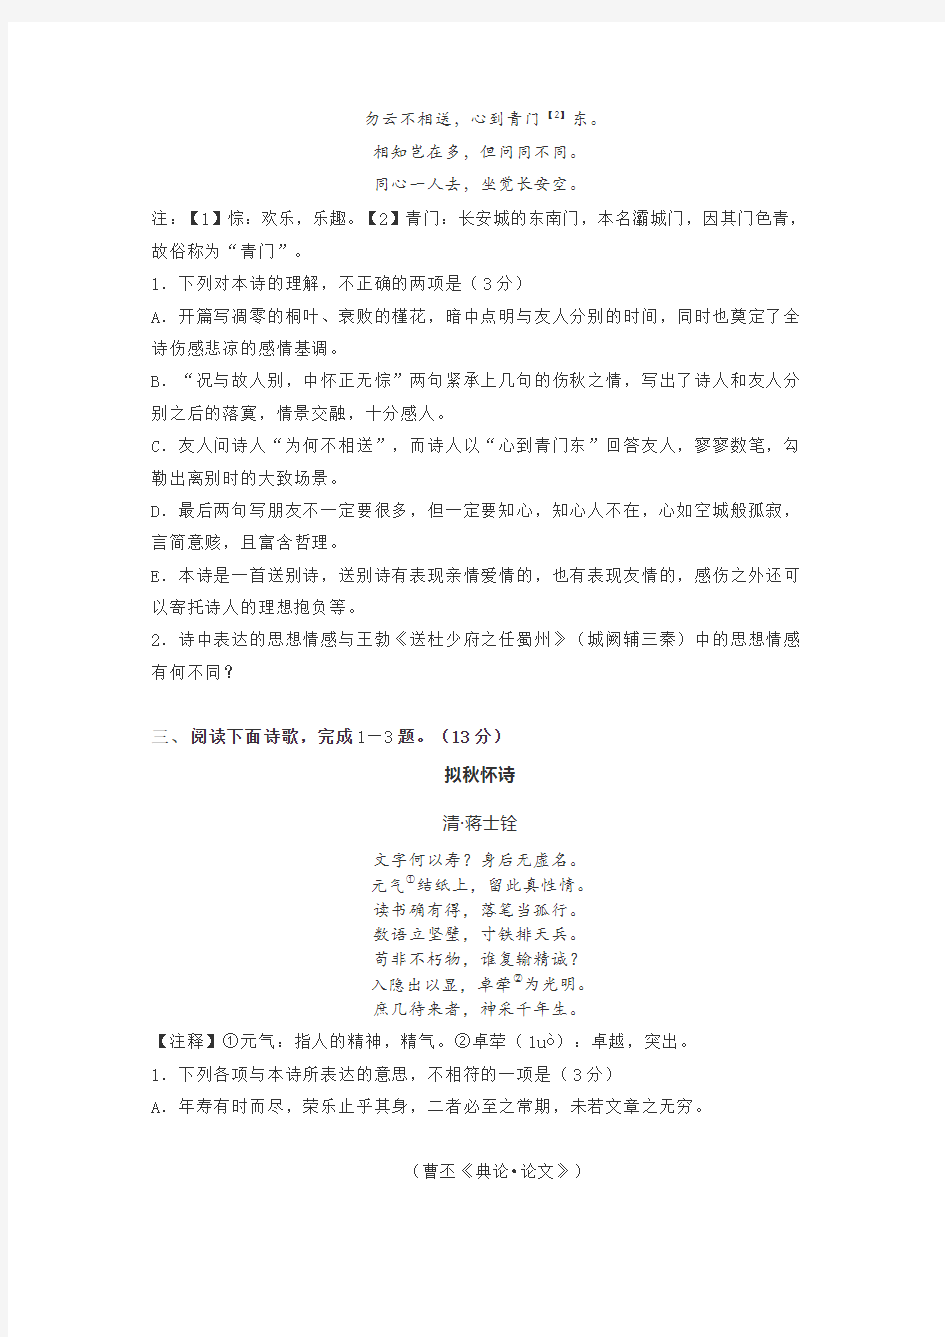 2019年北京高考语文海淀查漏补缺试题及答案之诗歌鉴赏